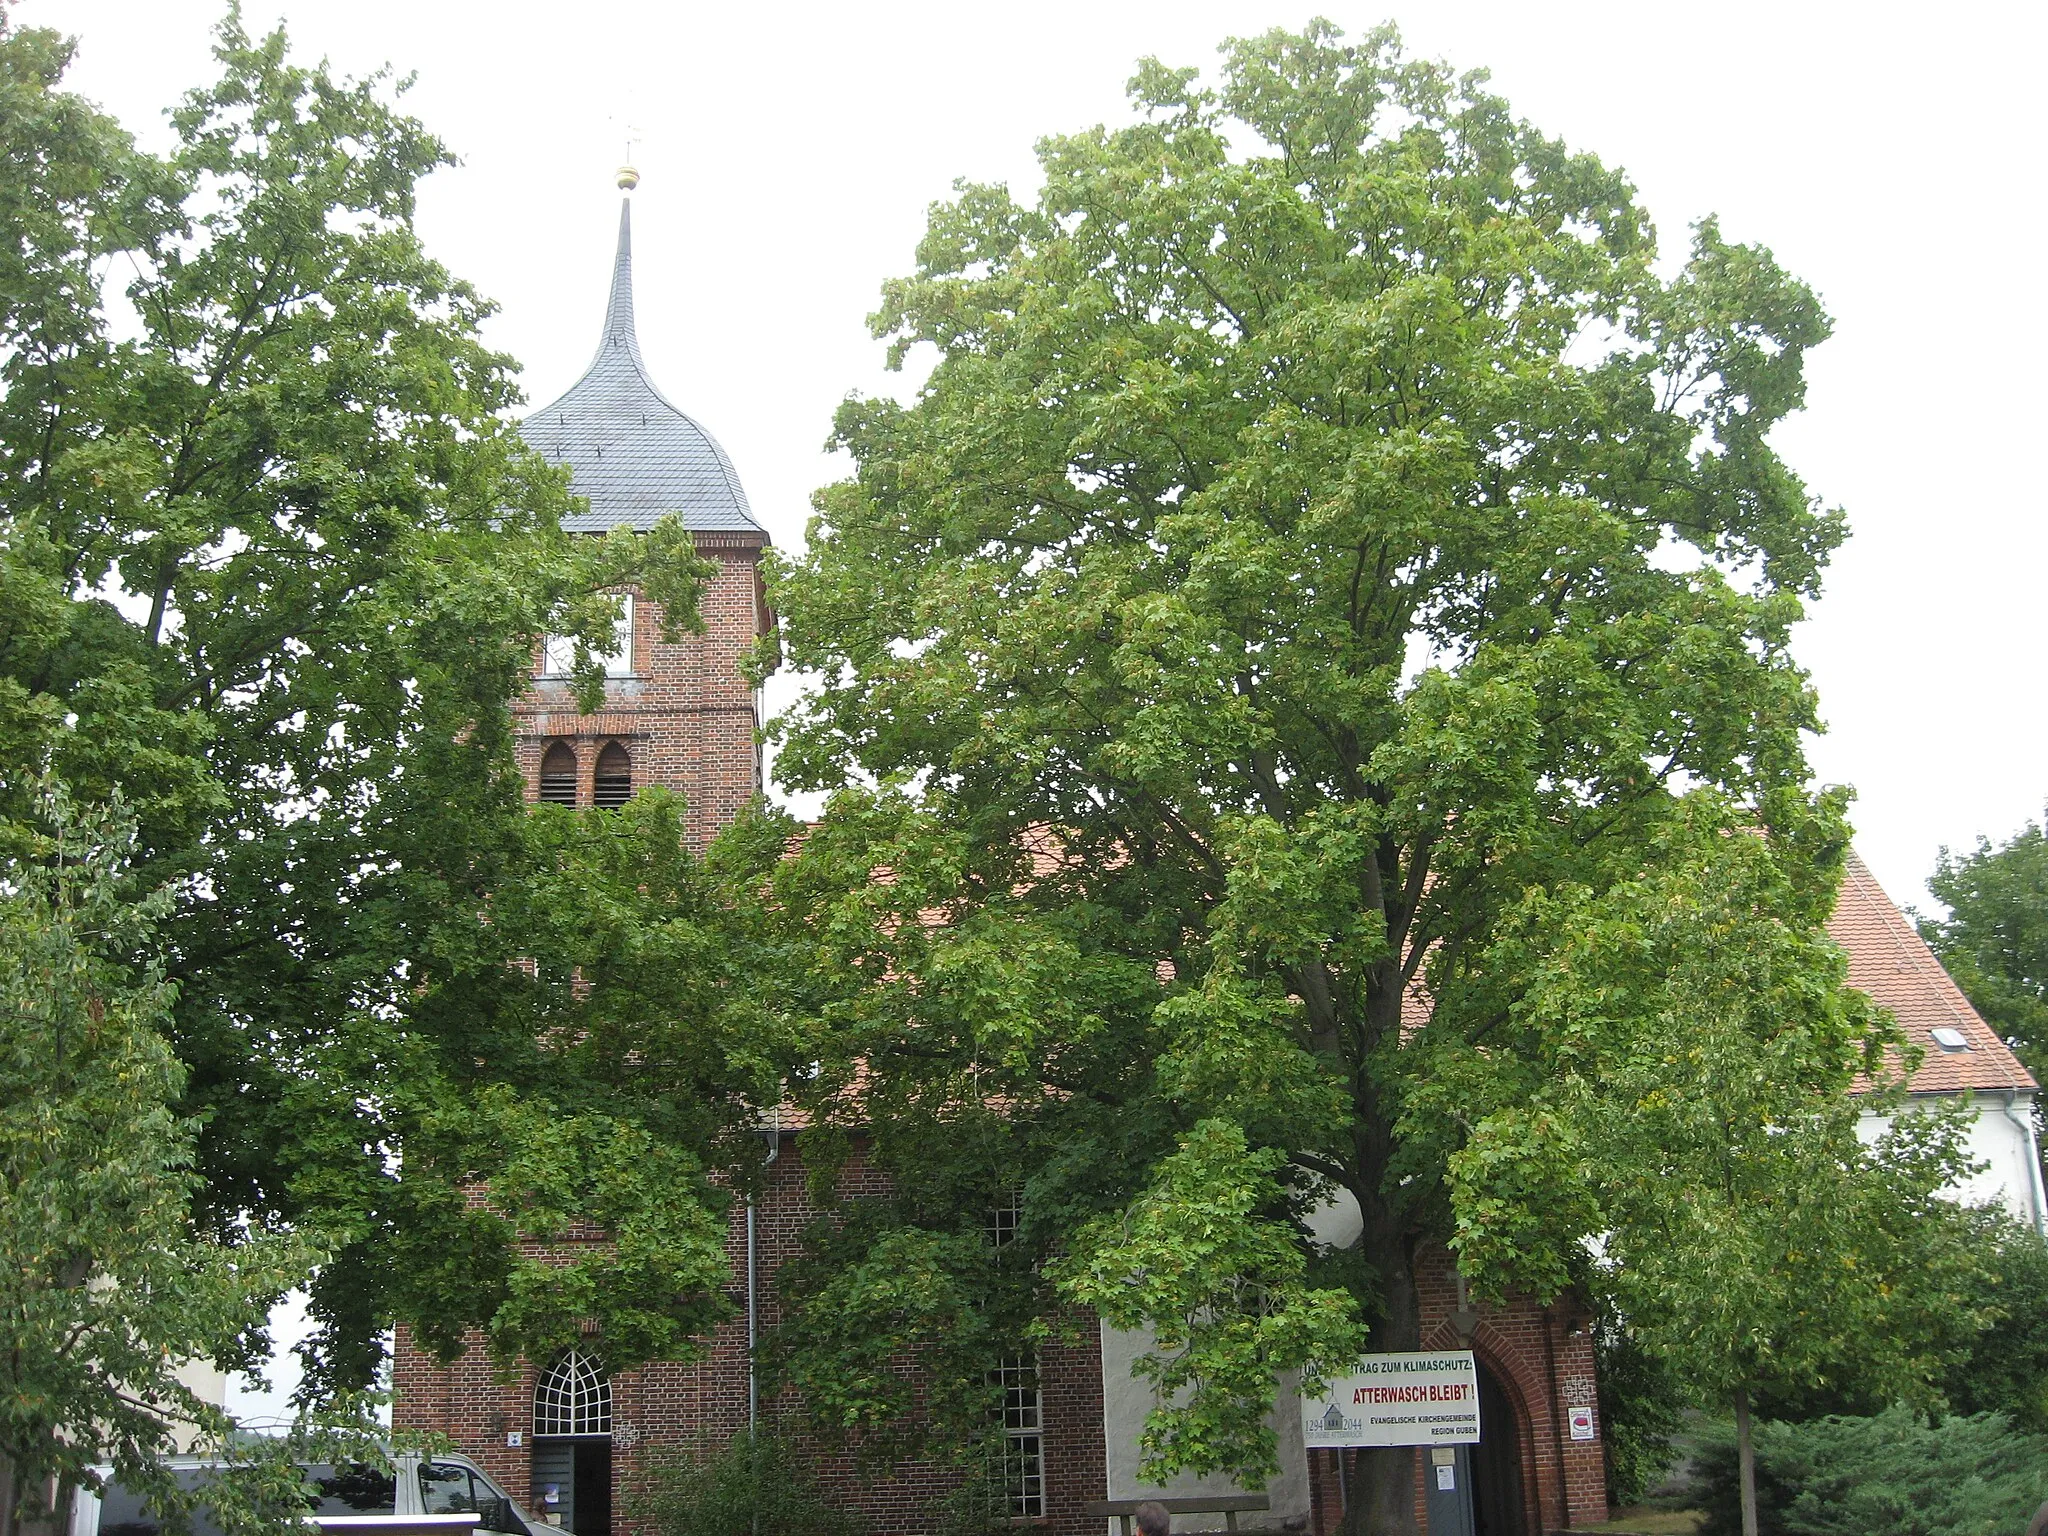 Photo showing: The village church of Atterwasch, Brandenburg, Germany.